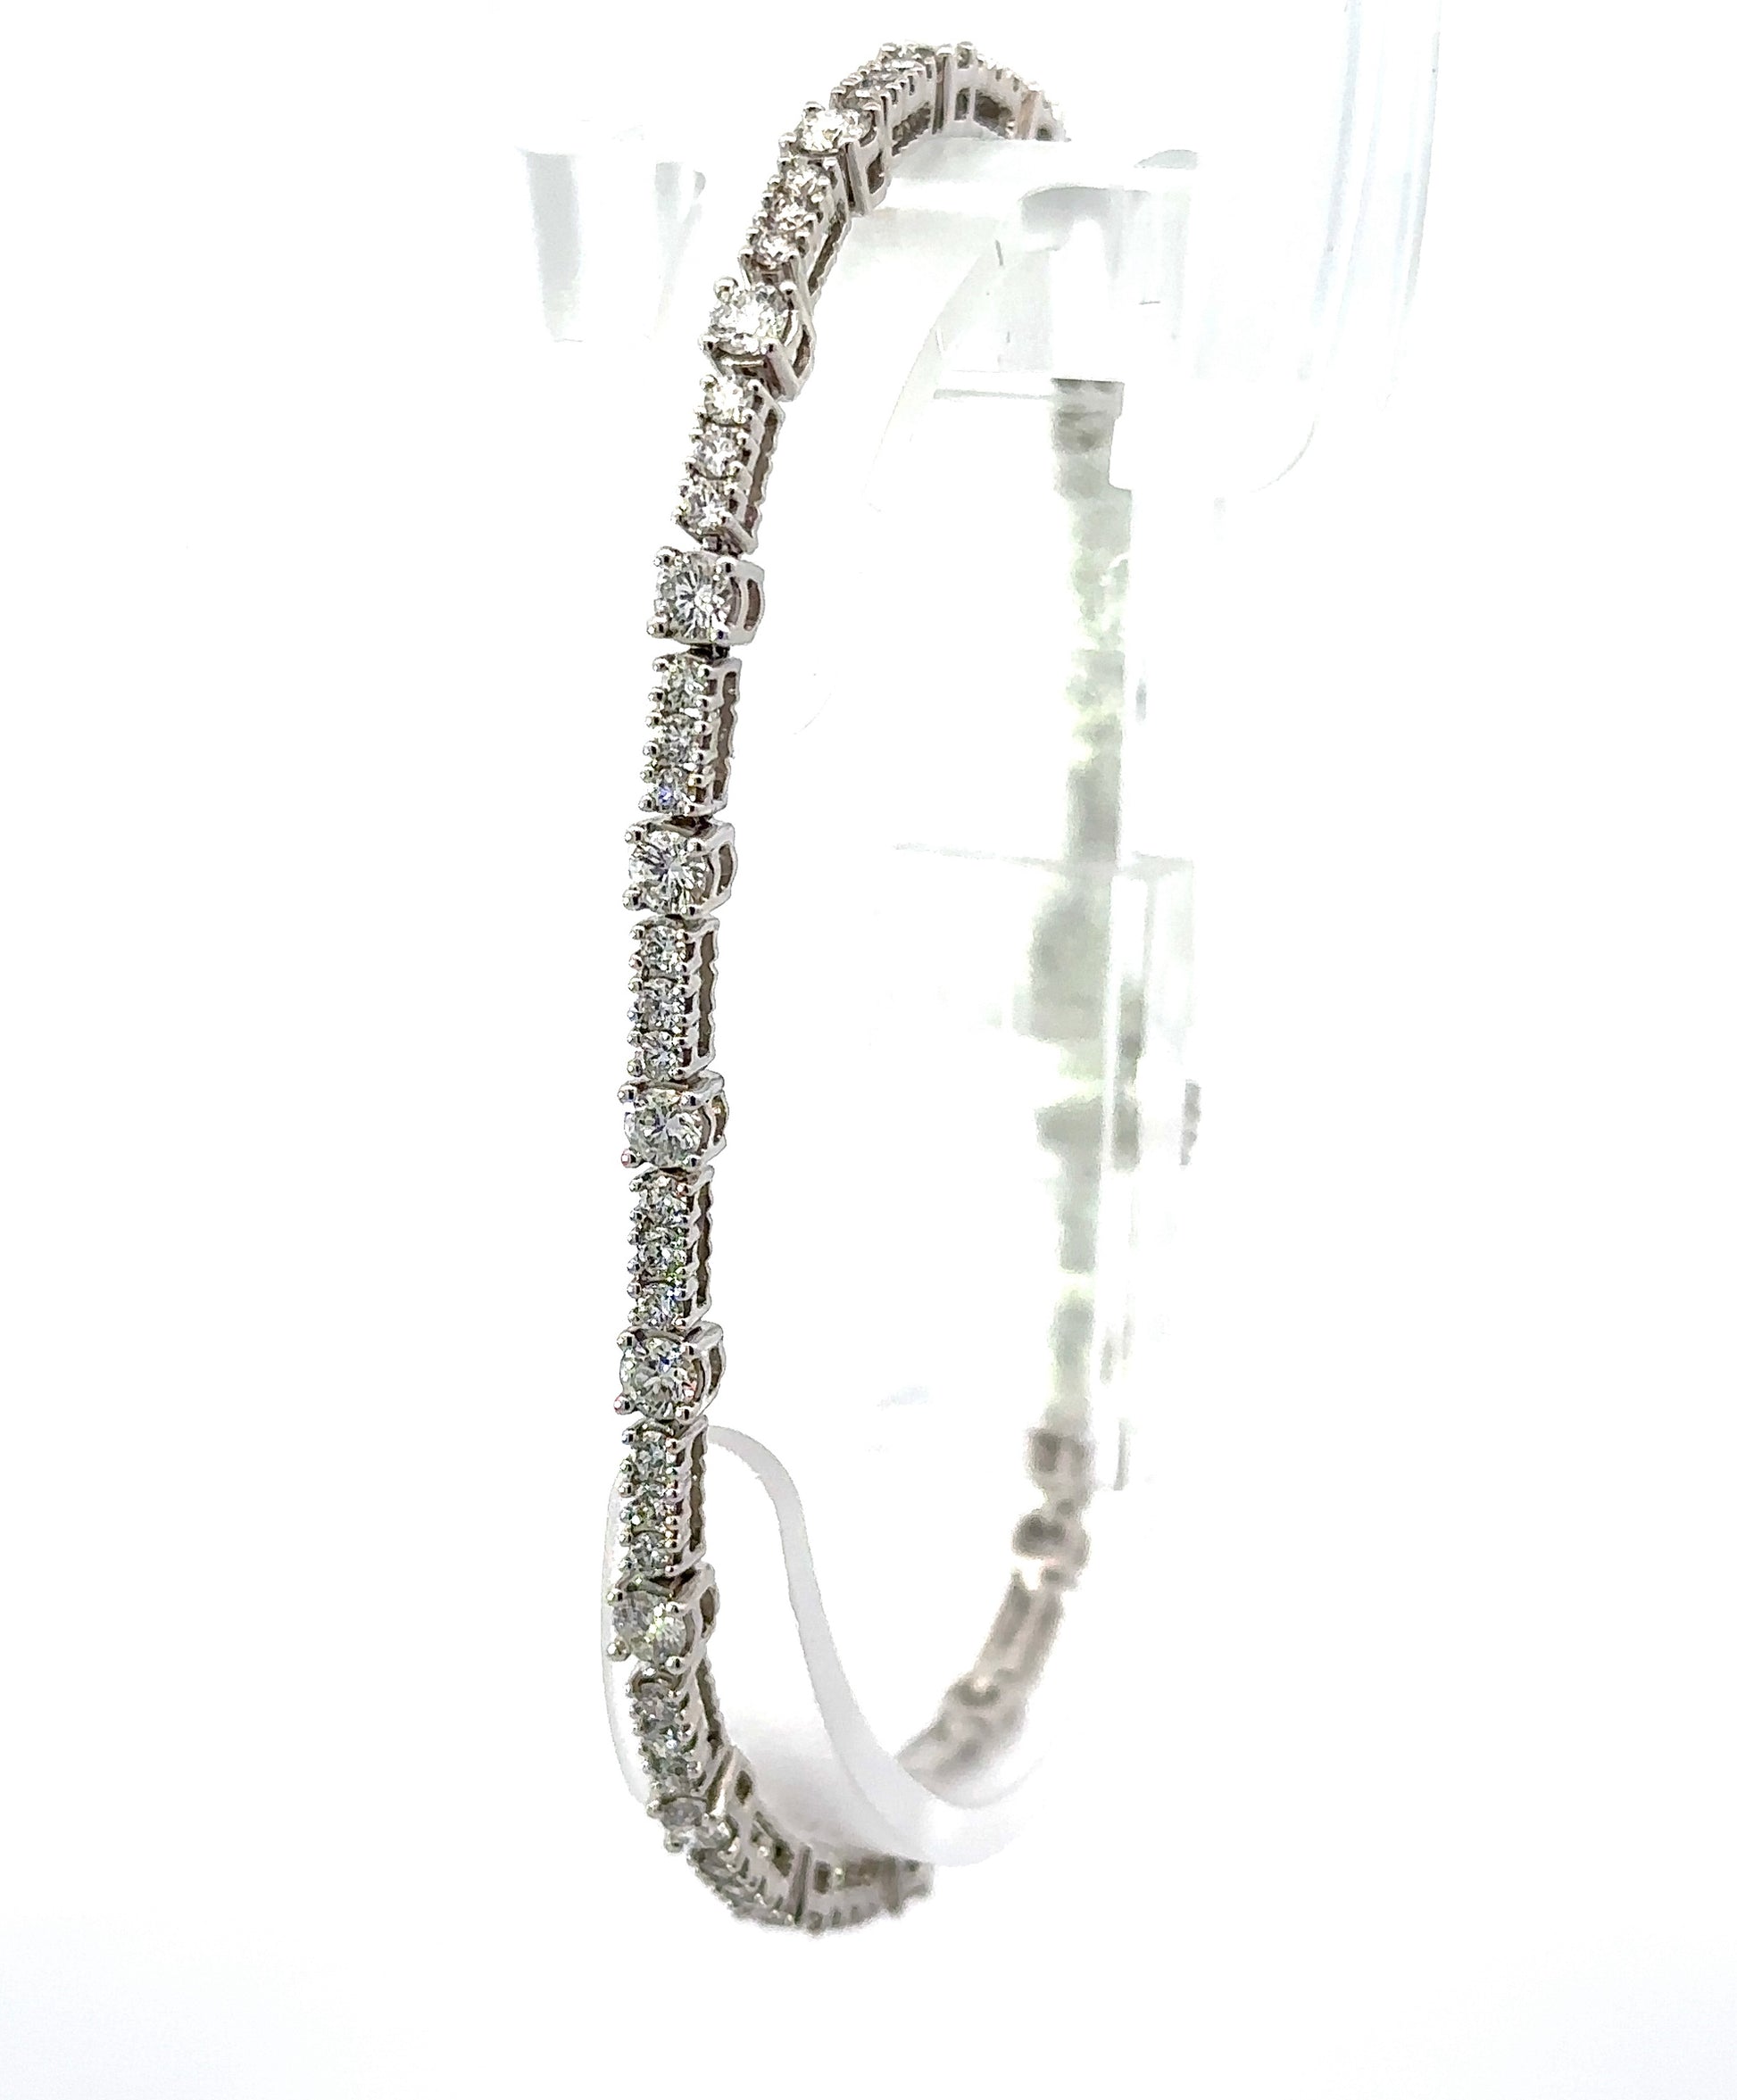 diagonal view of white gold tennis bracelet with alternating sizes of diamonds